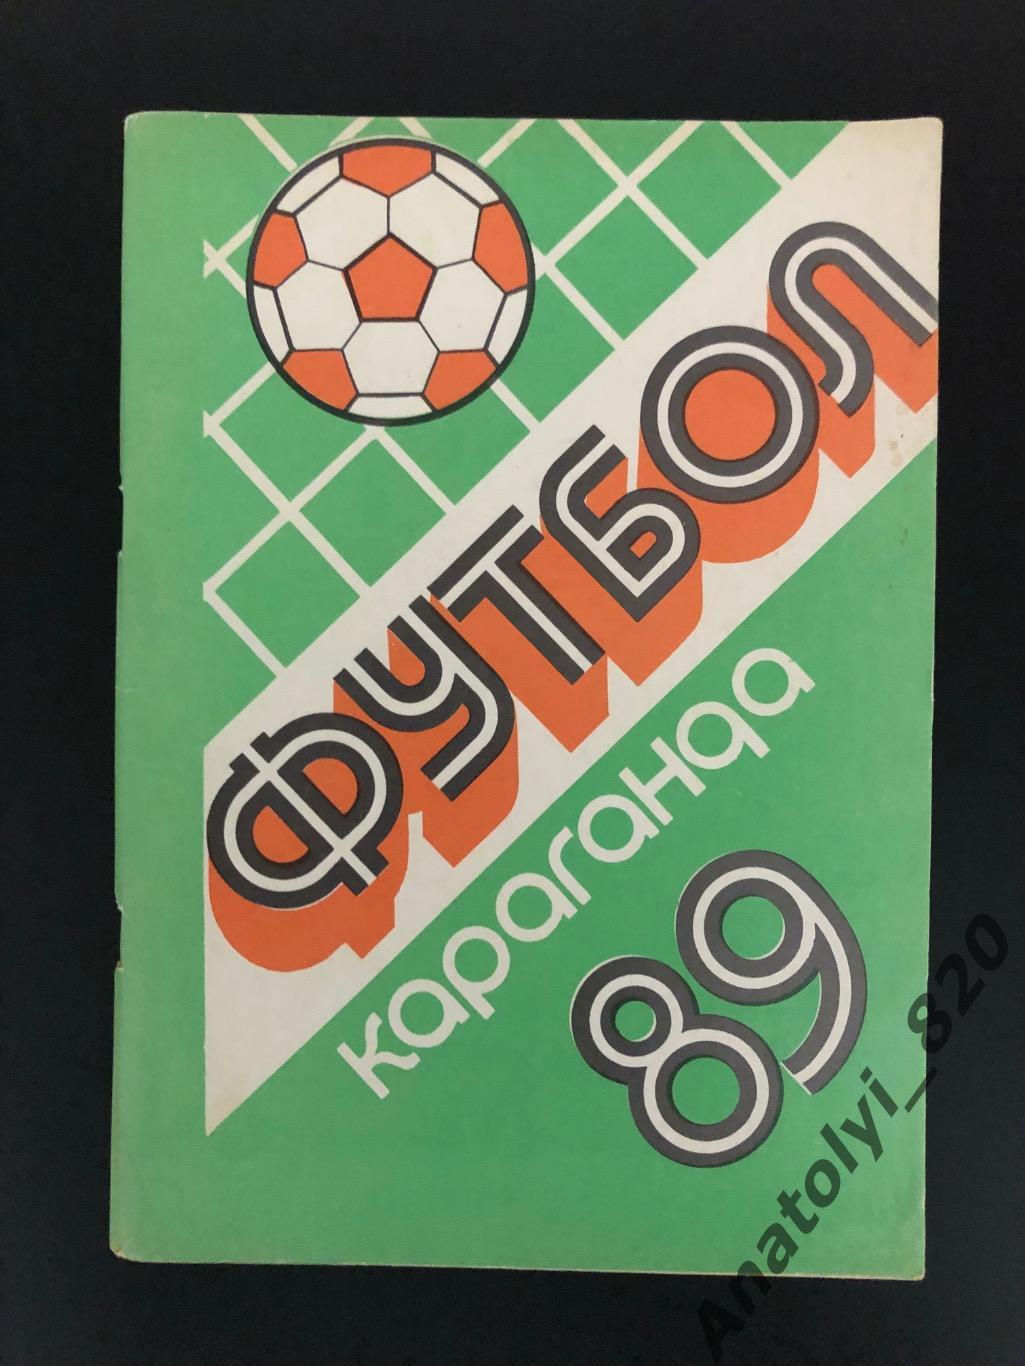 Караганда 1989 год, календарь справочник